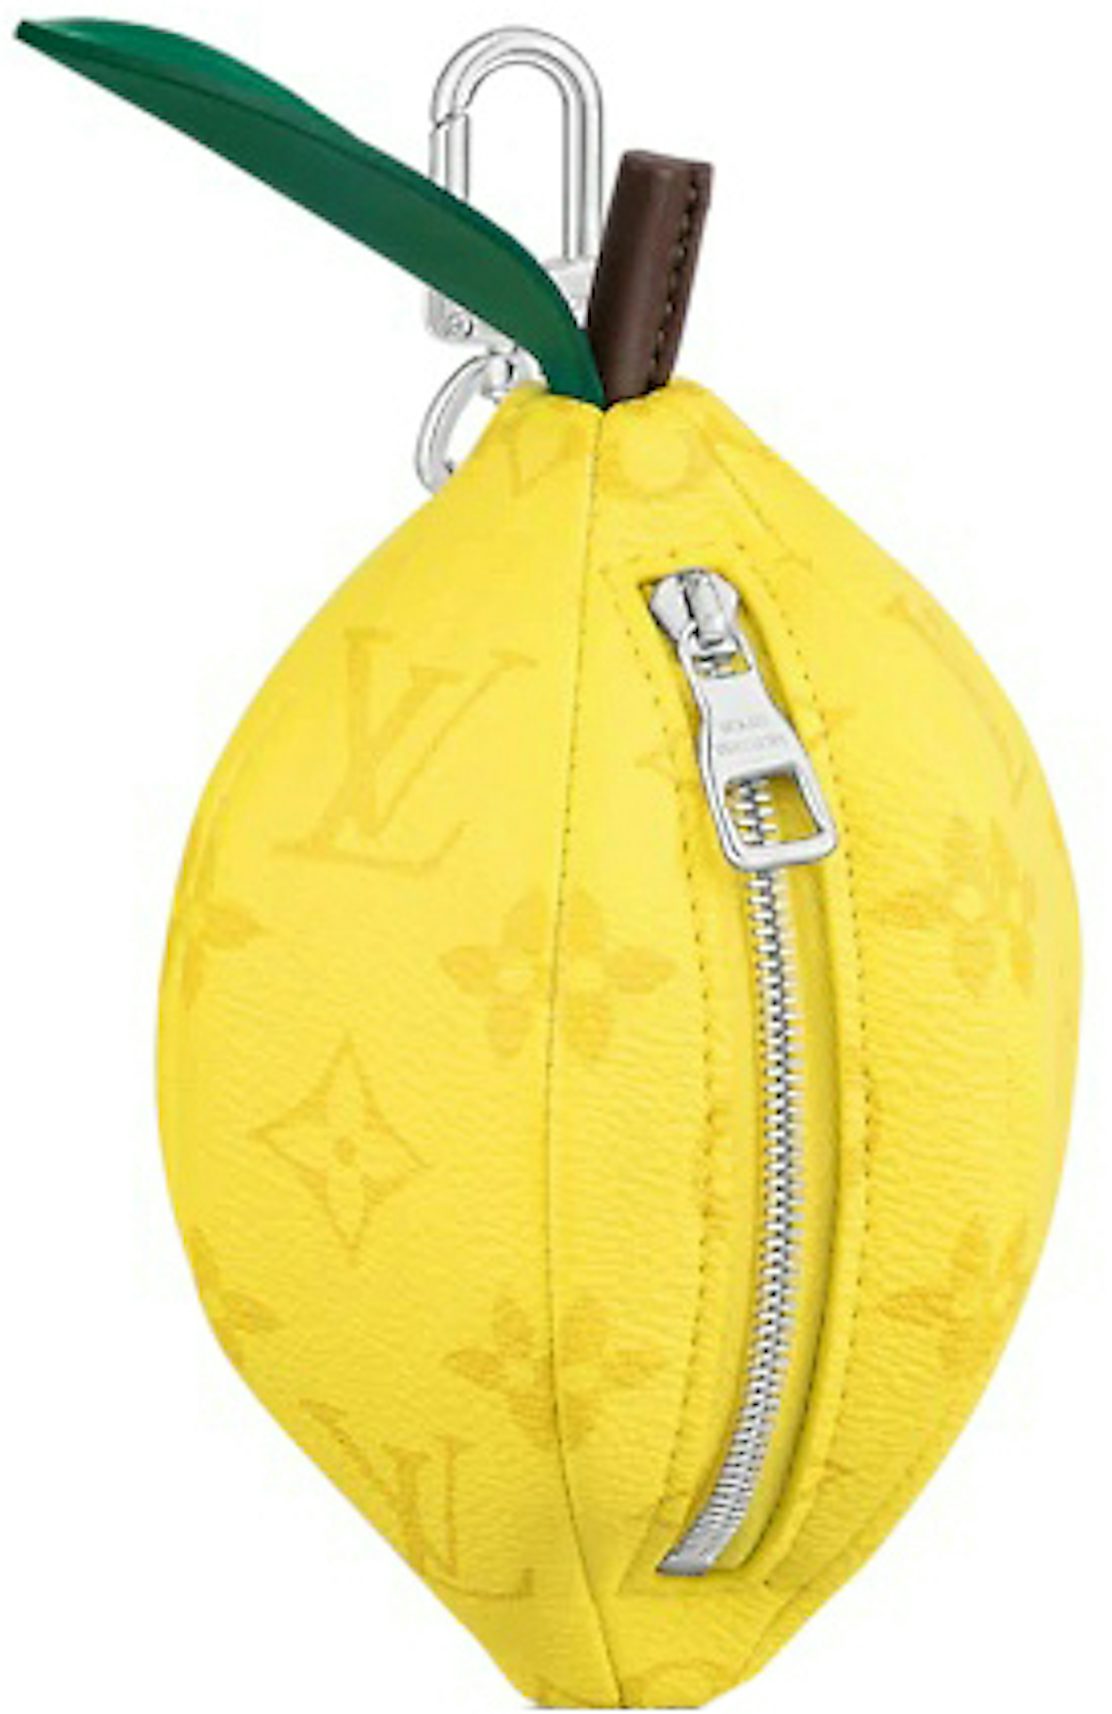 https://images.stockx.com/images/Louis-Vuitton-Lemon-Pouch-Yellow.jpg?fit=fill&bg=FFFFFF&w=1200&h=857&fm=jpg&auto=compress&dpr=2&trim=color&trimcolor=ffffff&updated_at=1642702014&q=60